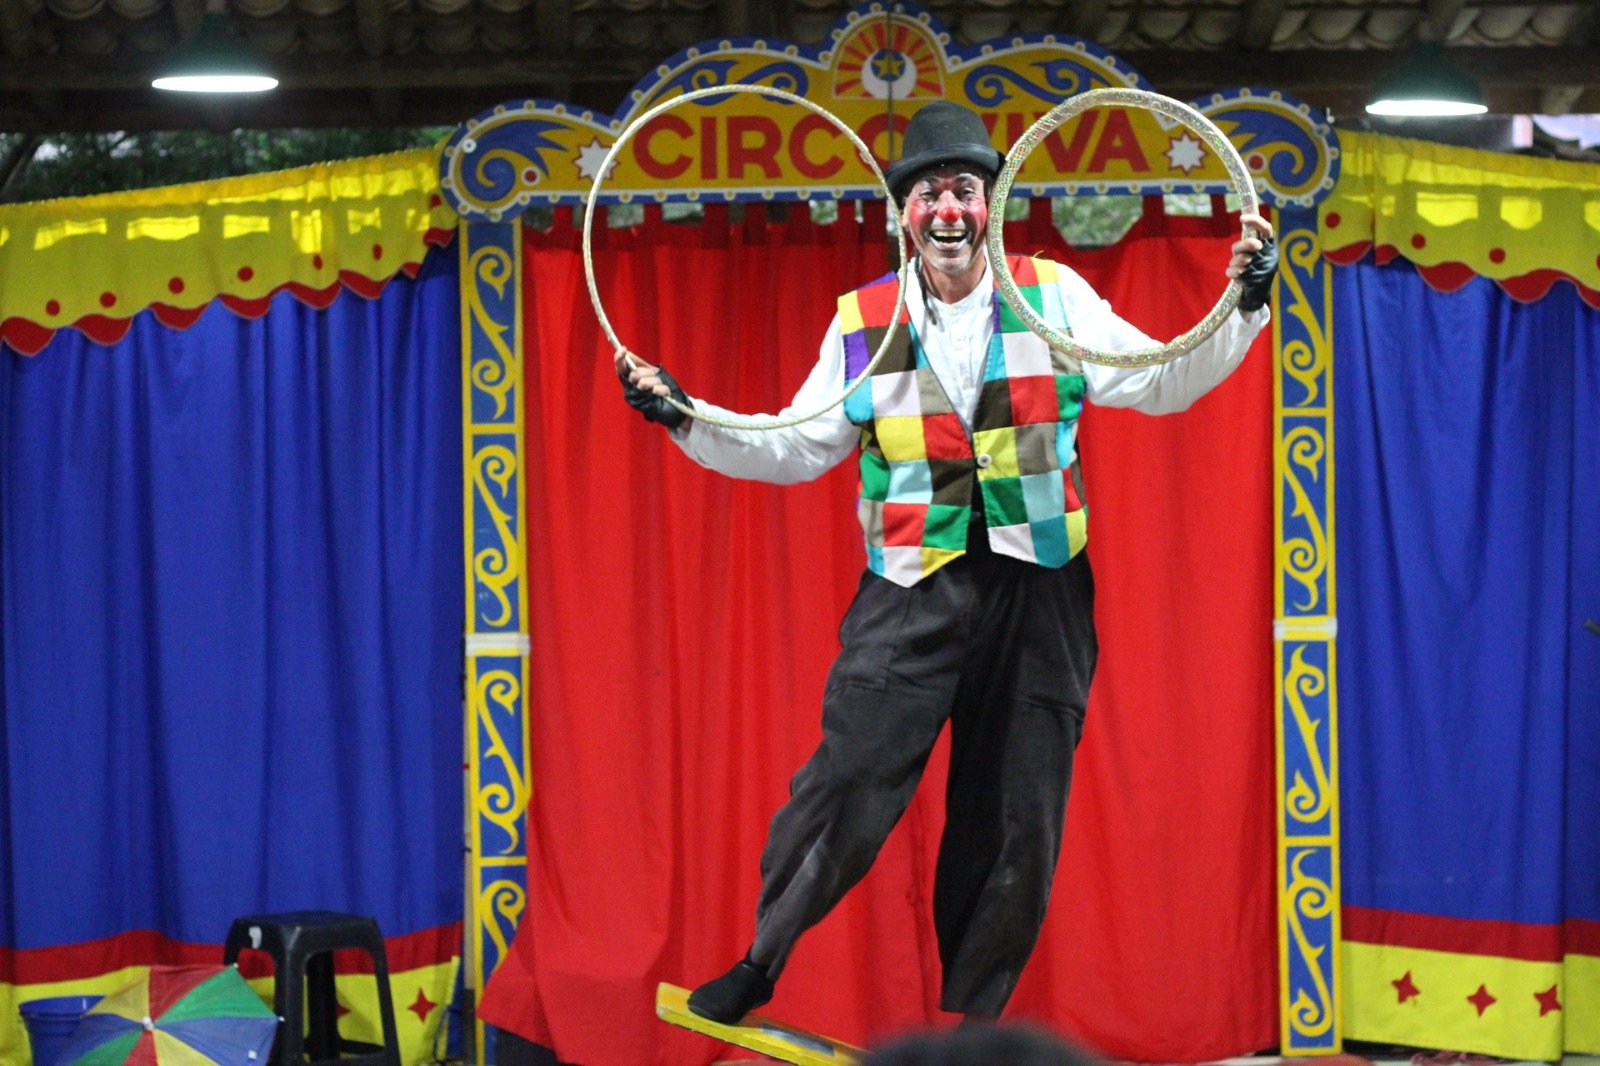 Festival de Inverno apresenta ginástica artística e  circo, mostrando a diversidade da arte